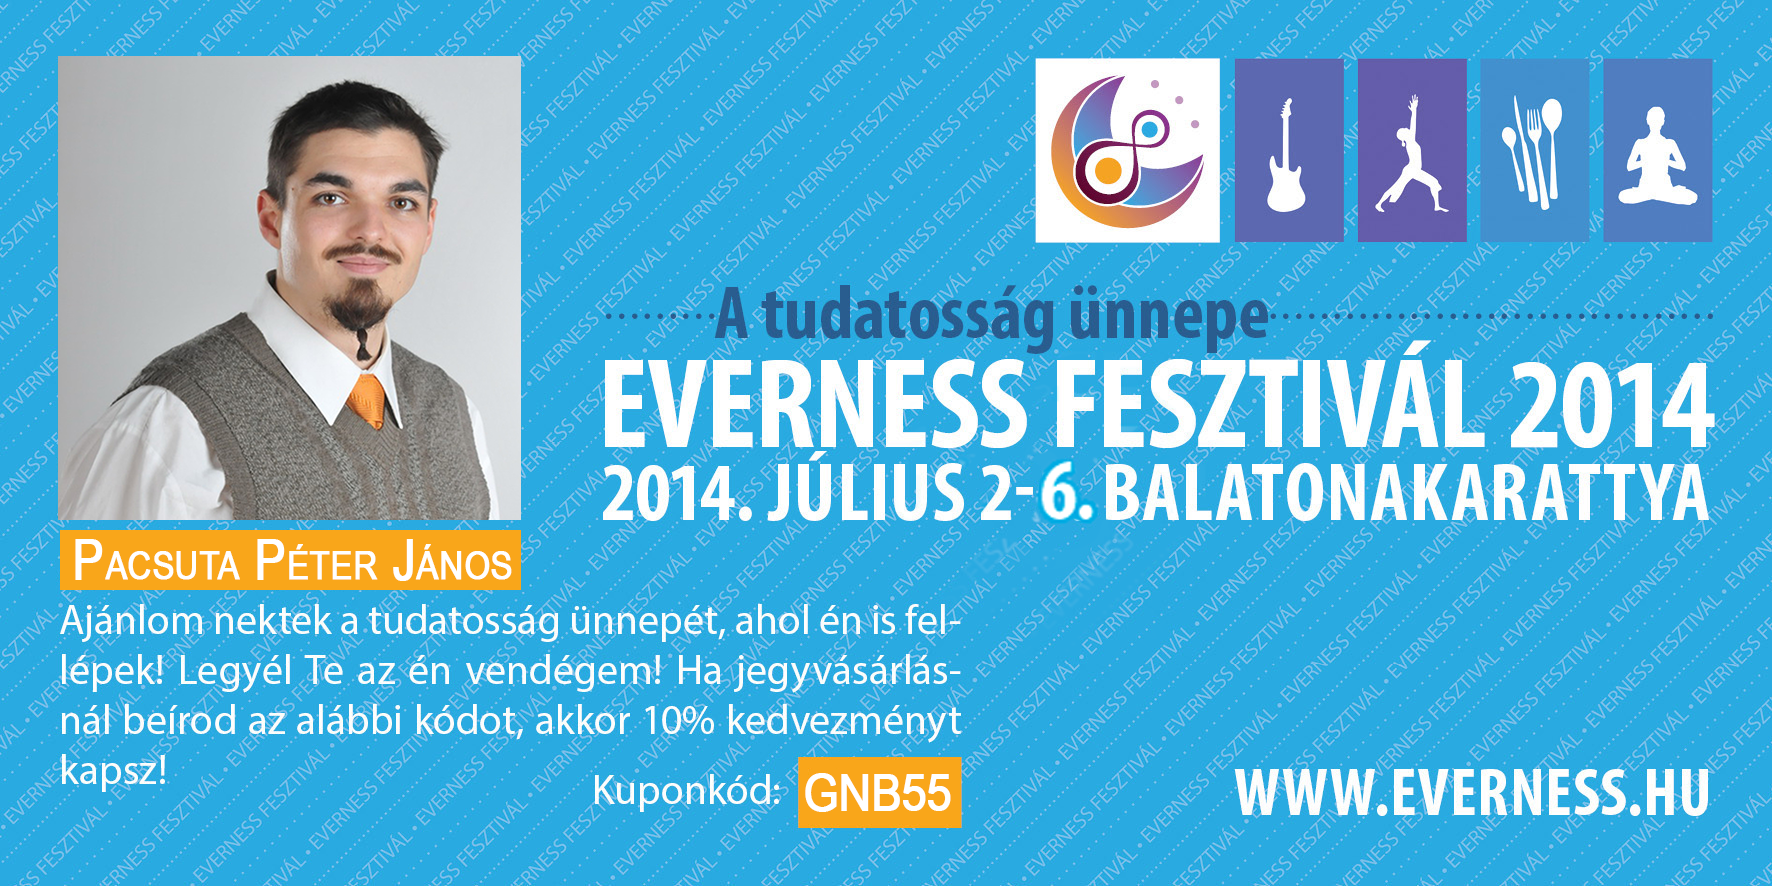 Everness Fesztivál kuponkód tájékoztató.png